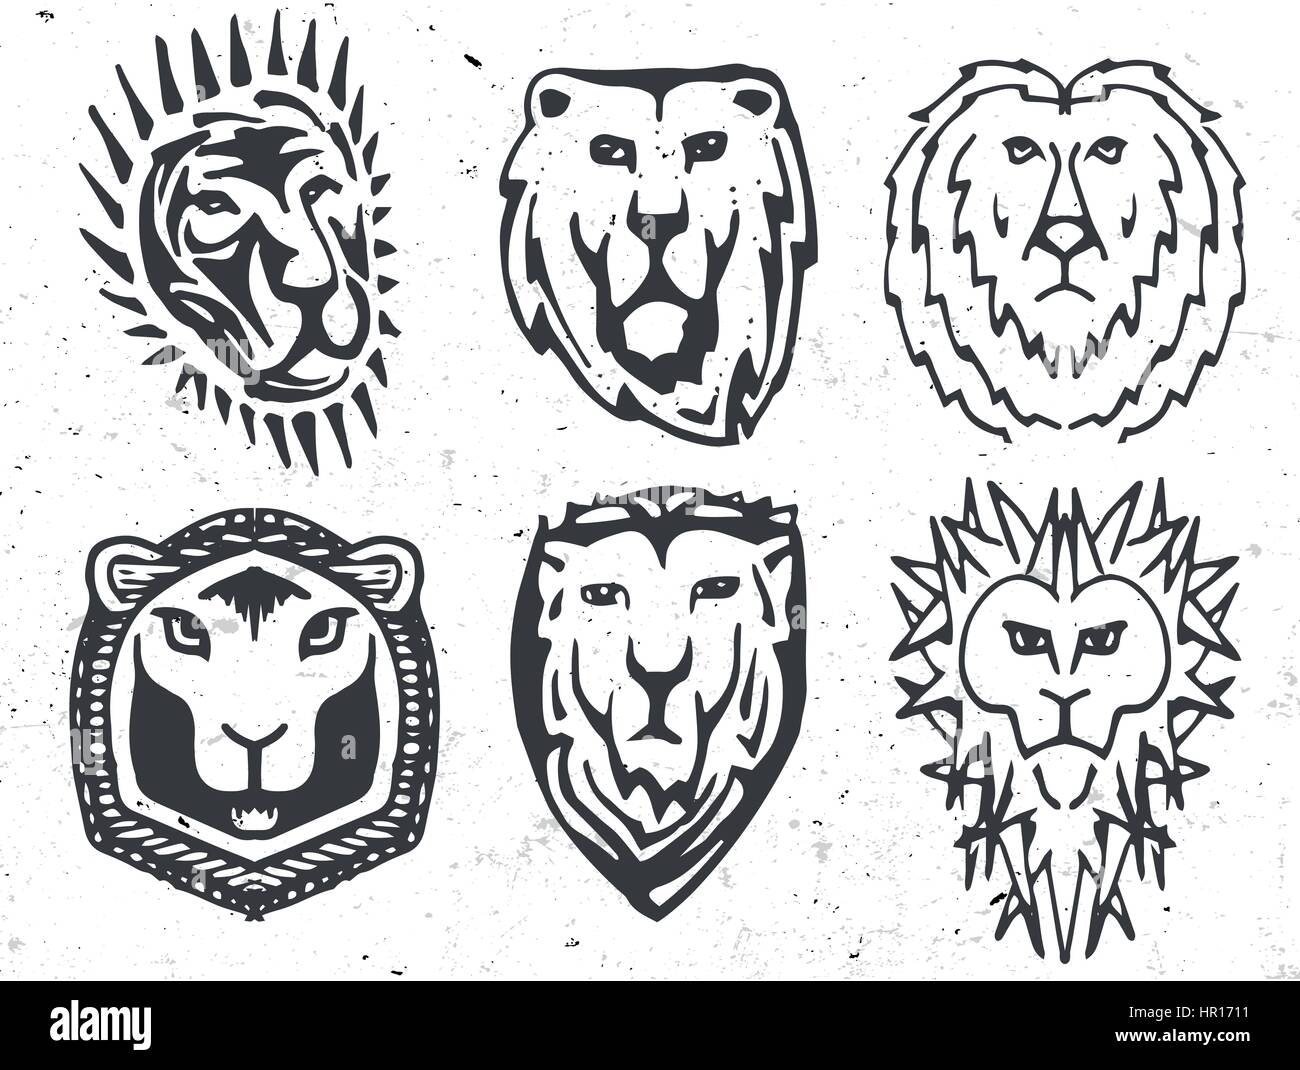 Isolierte abstrakte schwarze und weiße Farbe Wappen mit Löwen Bild Logos, mittelalterliche Schilde Logos Sammlung Vektor-Illustration. Stock Vektor